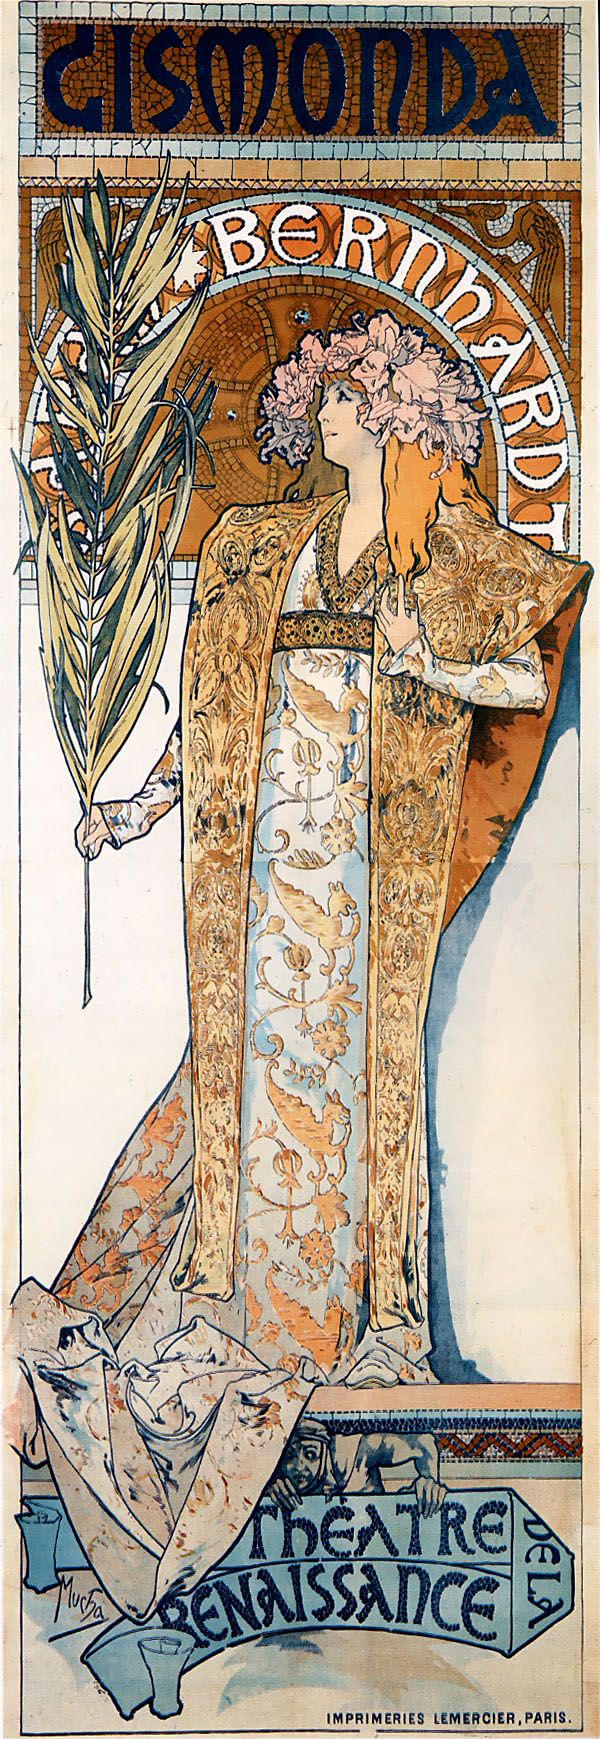 Alfons Mucha 1860 – 1939, Gismonda 1894.
Plakat für Victorien Sardous 'Gismonda', 
gespielt von Sarah Bernhardt am 
Théâtre de la Renaissance in Paris. 
Lithographie 216 x 74 cm. 
Grendelkhan 2010 commons.wikimedia